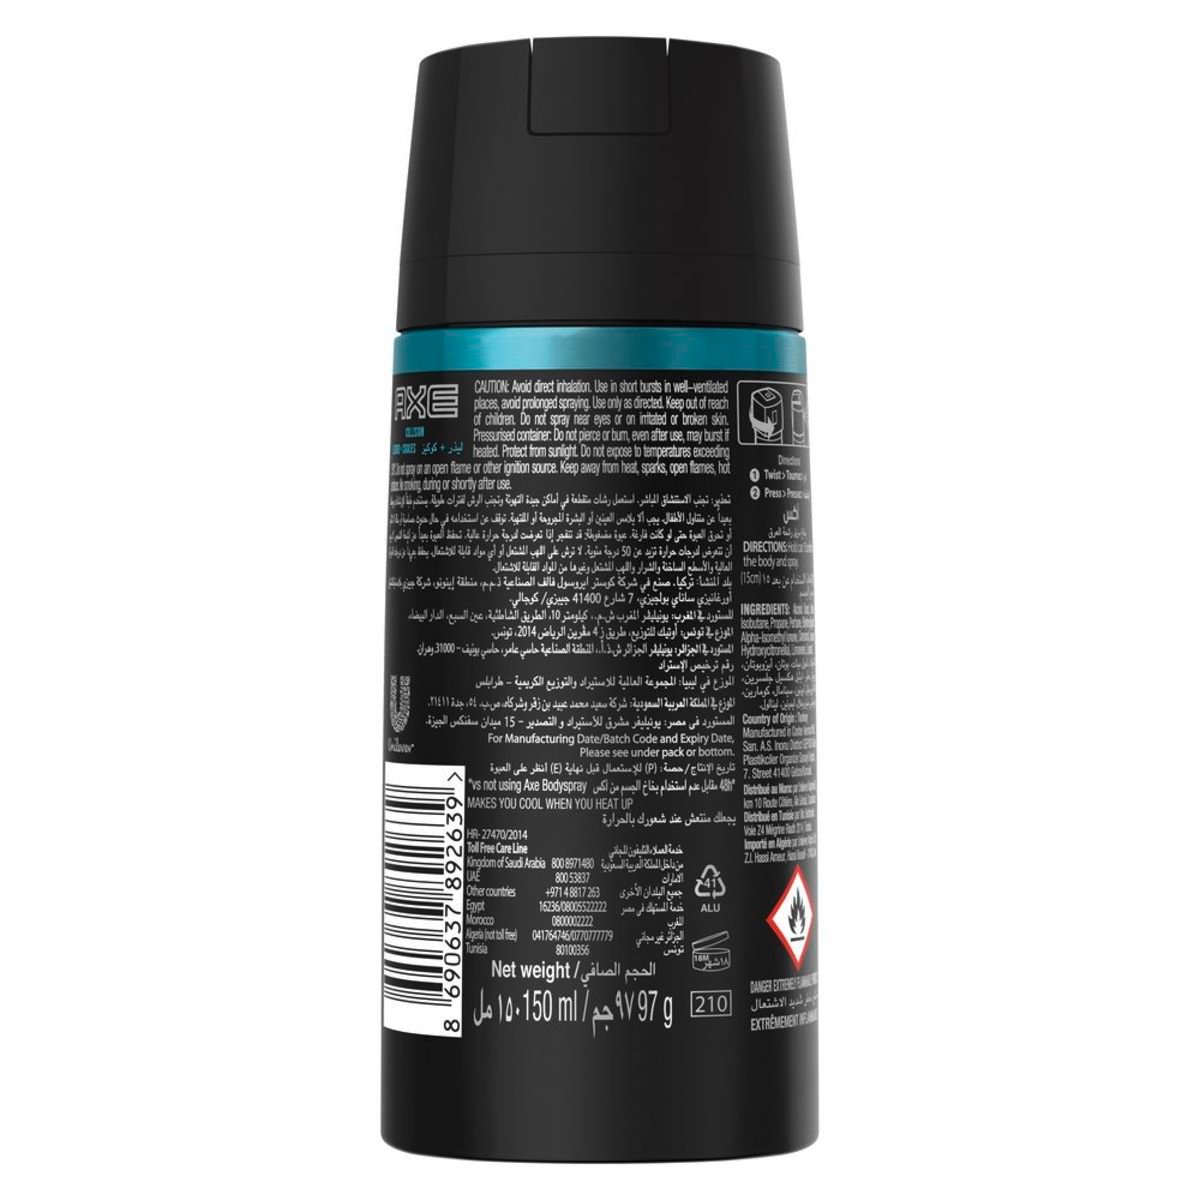 AXE Body Spray Deodorant Leather & Cookies 150 ml